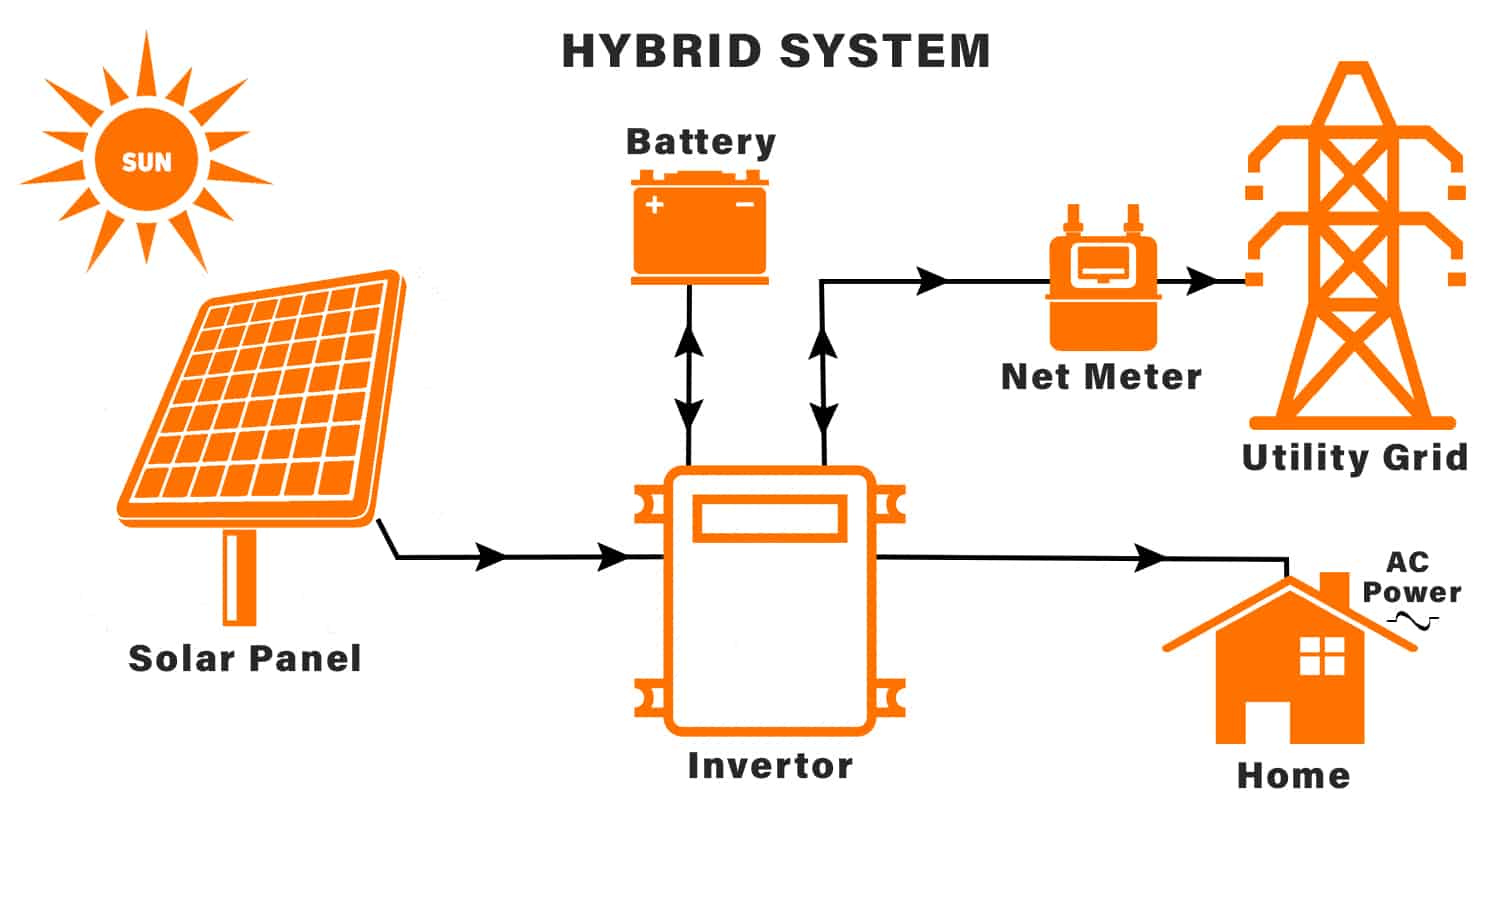 하이브리드 태양광 시스템의 이점은 무엇입니까?
        